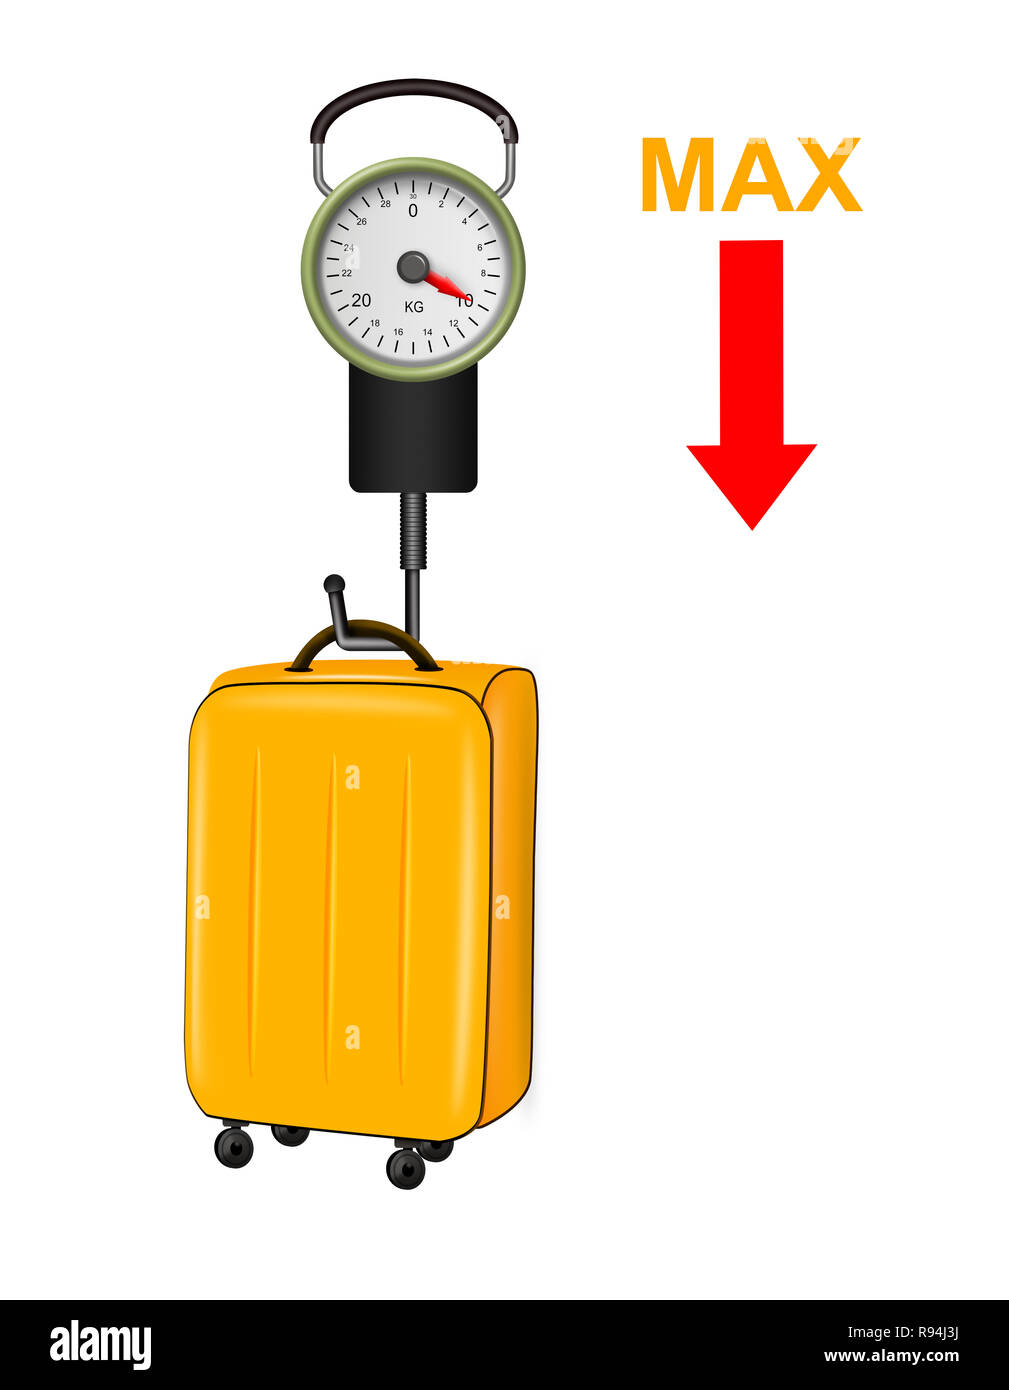 https://c8.alamy.com/compes/r94j3j/ilustracion-del-manual-bascula-para-pesar-las-maletas-en-el-aeropuerto-sobre-fondo-blanco-r94j3j.jpg